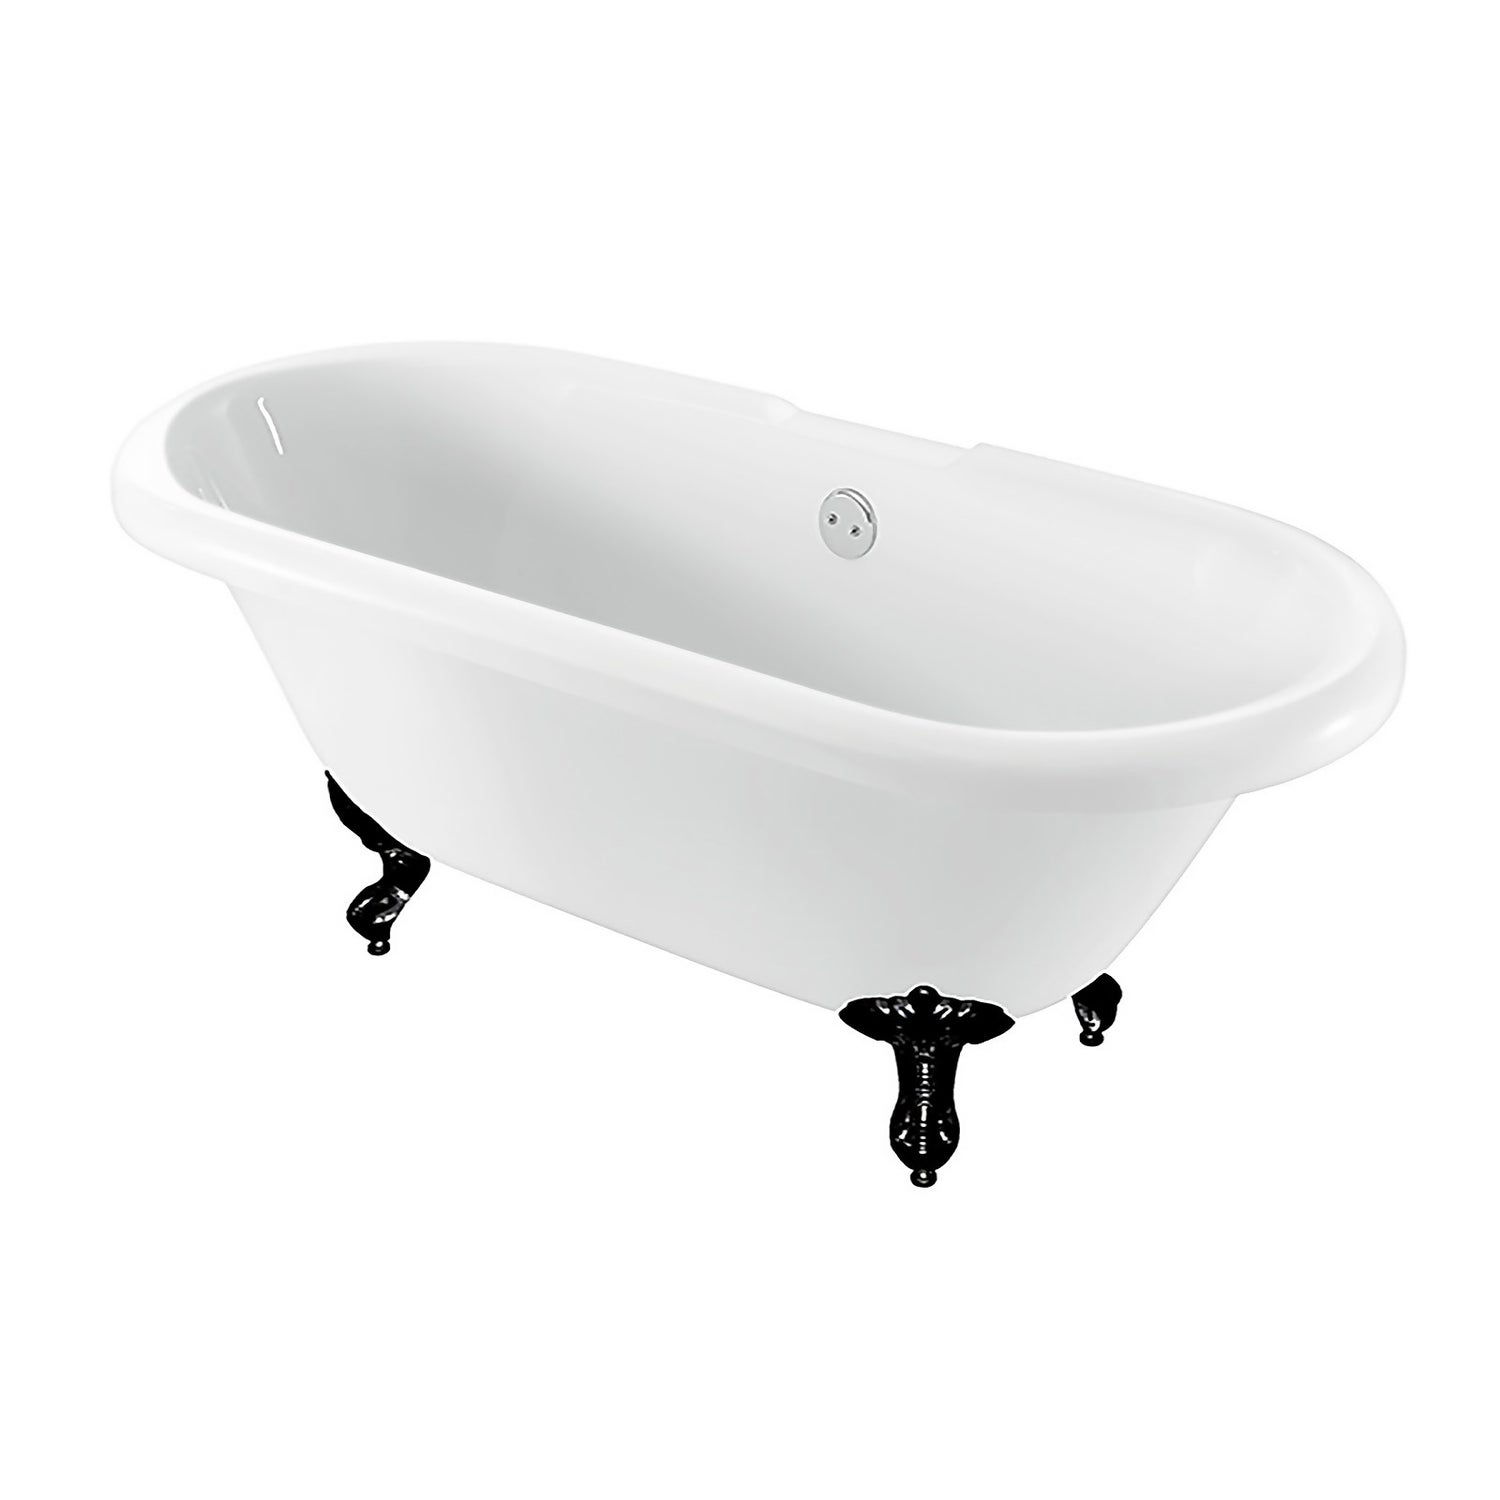 Evesham White Roll Top Bath with Black Claw Feet